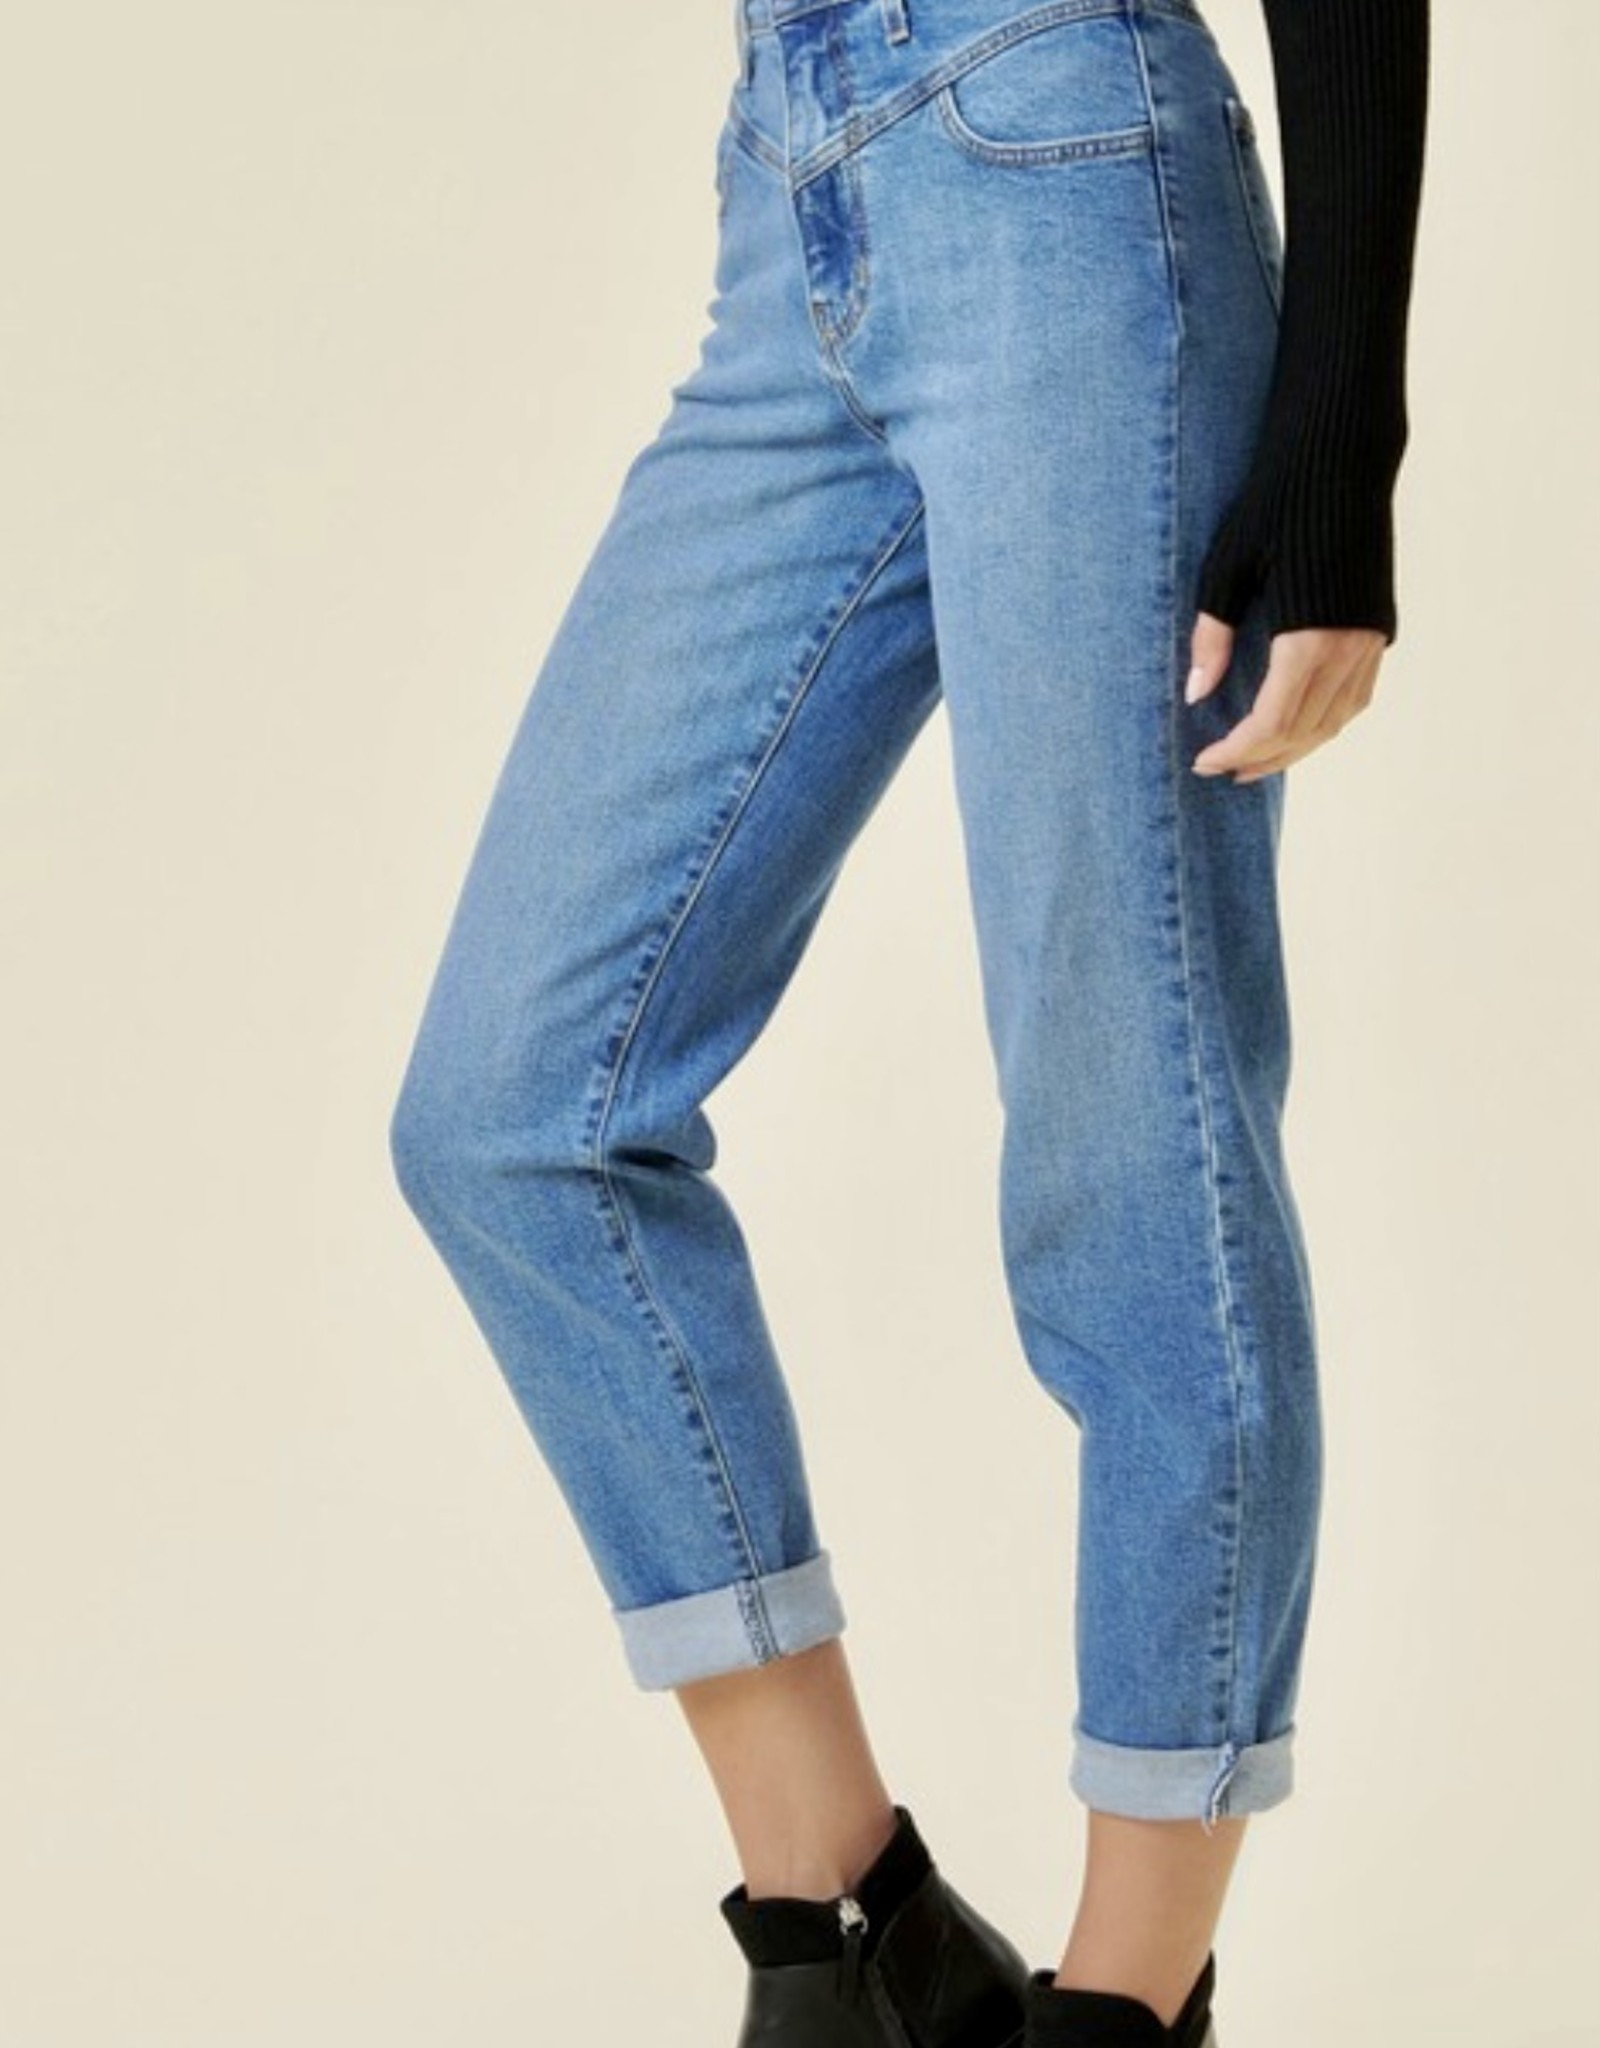 HUSH HANA v stitch high waisted jeans